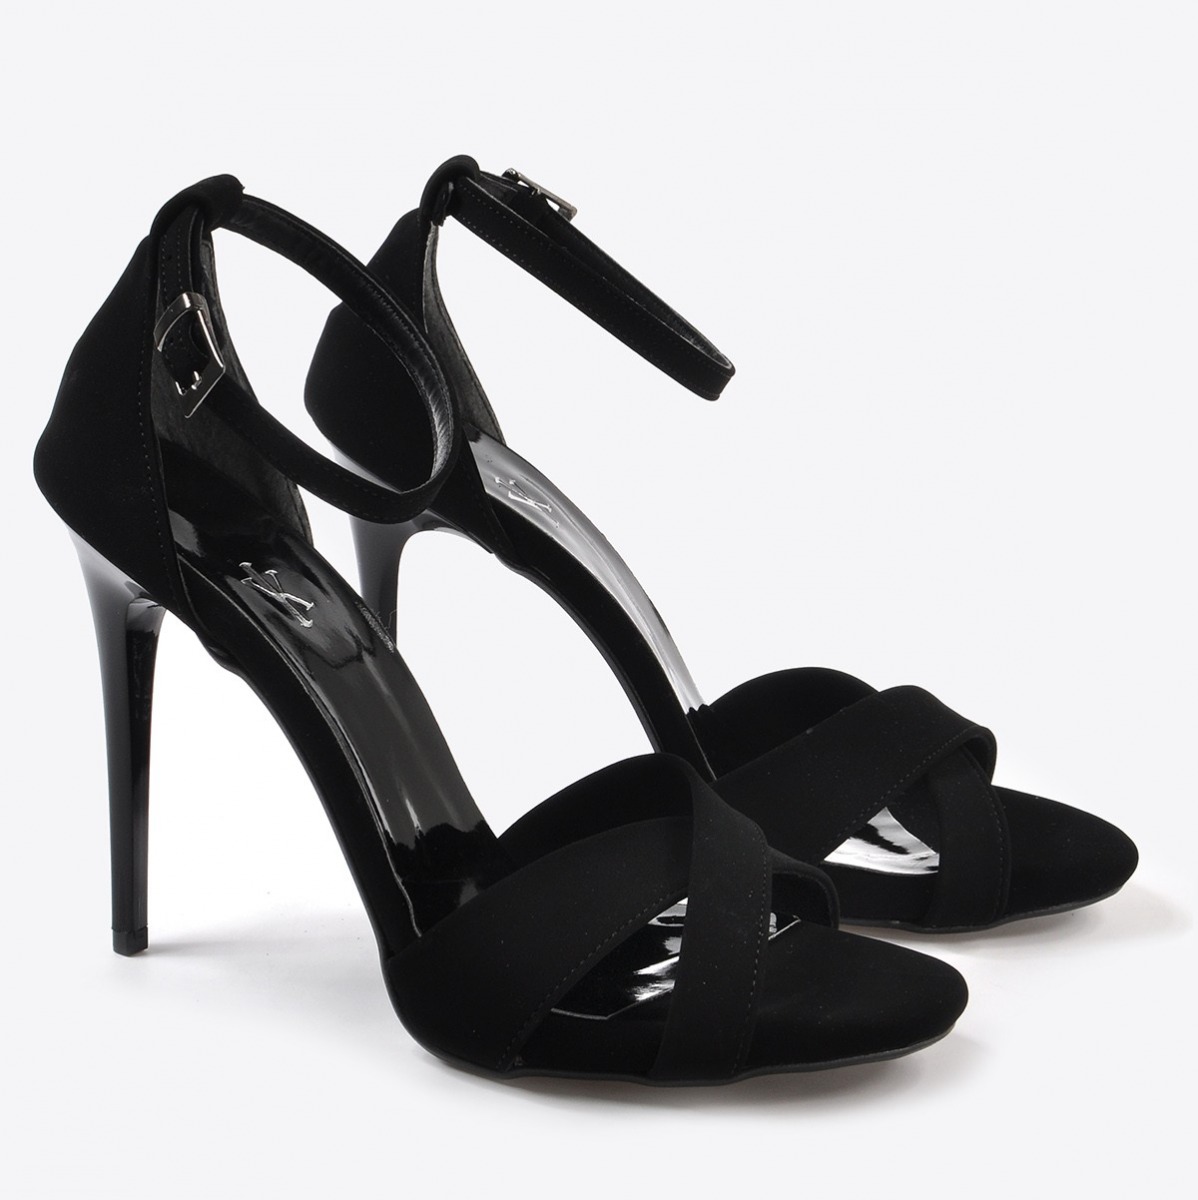 Flo Kadın  Siyah Süet Klasik Topuklu Ayakkabı VZN20-190Y. 4